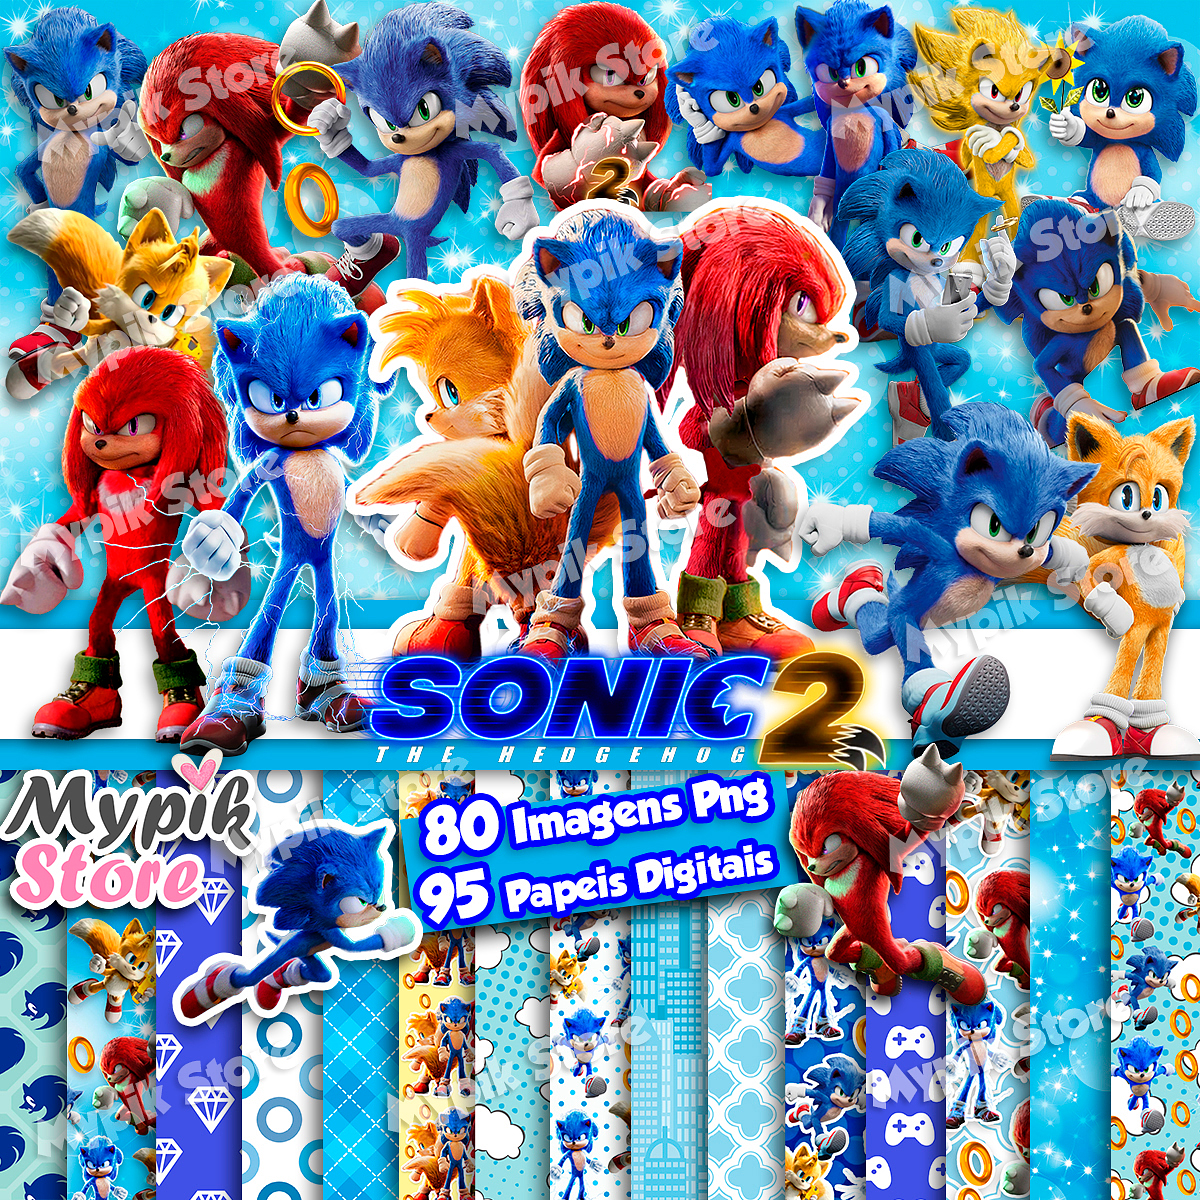 Kit Digital Sonic 01 Png - Kit Digital Sonic 01 Png